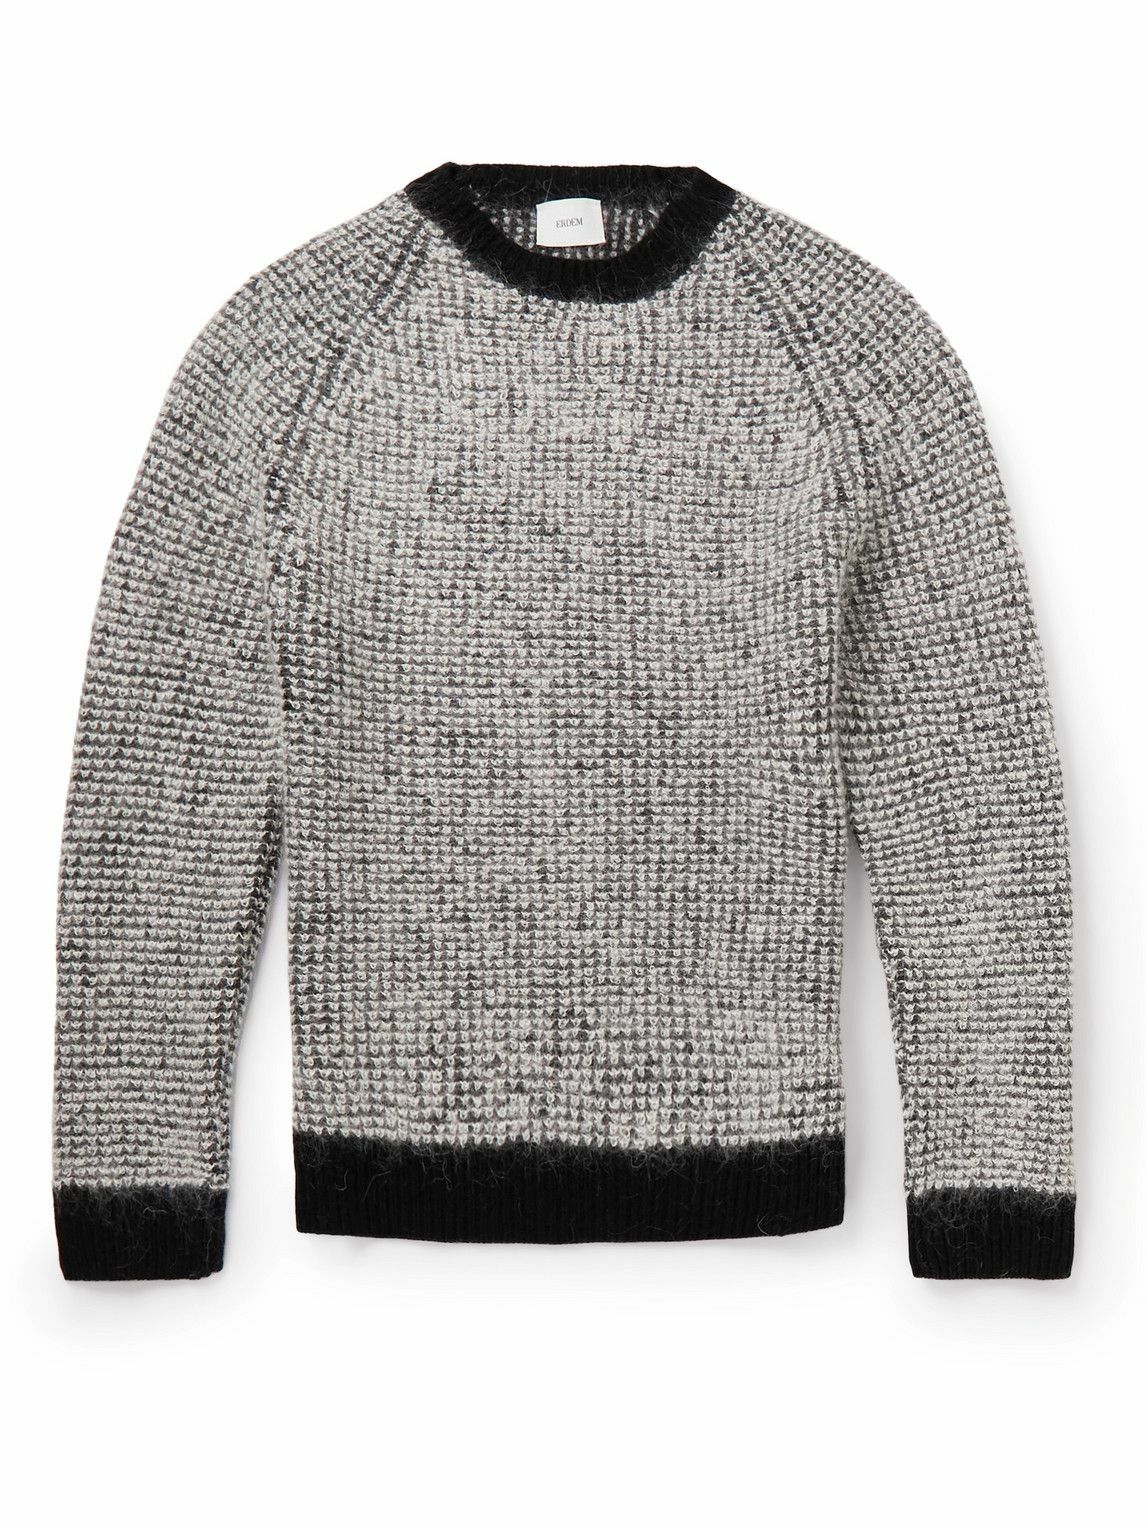 ERDEM - Wool-Blend Sweater - Black Erdem